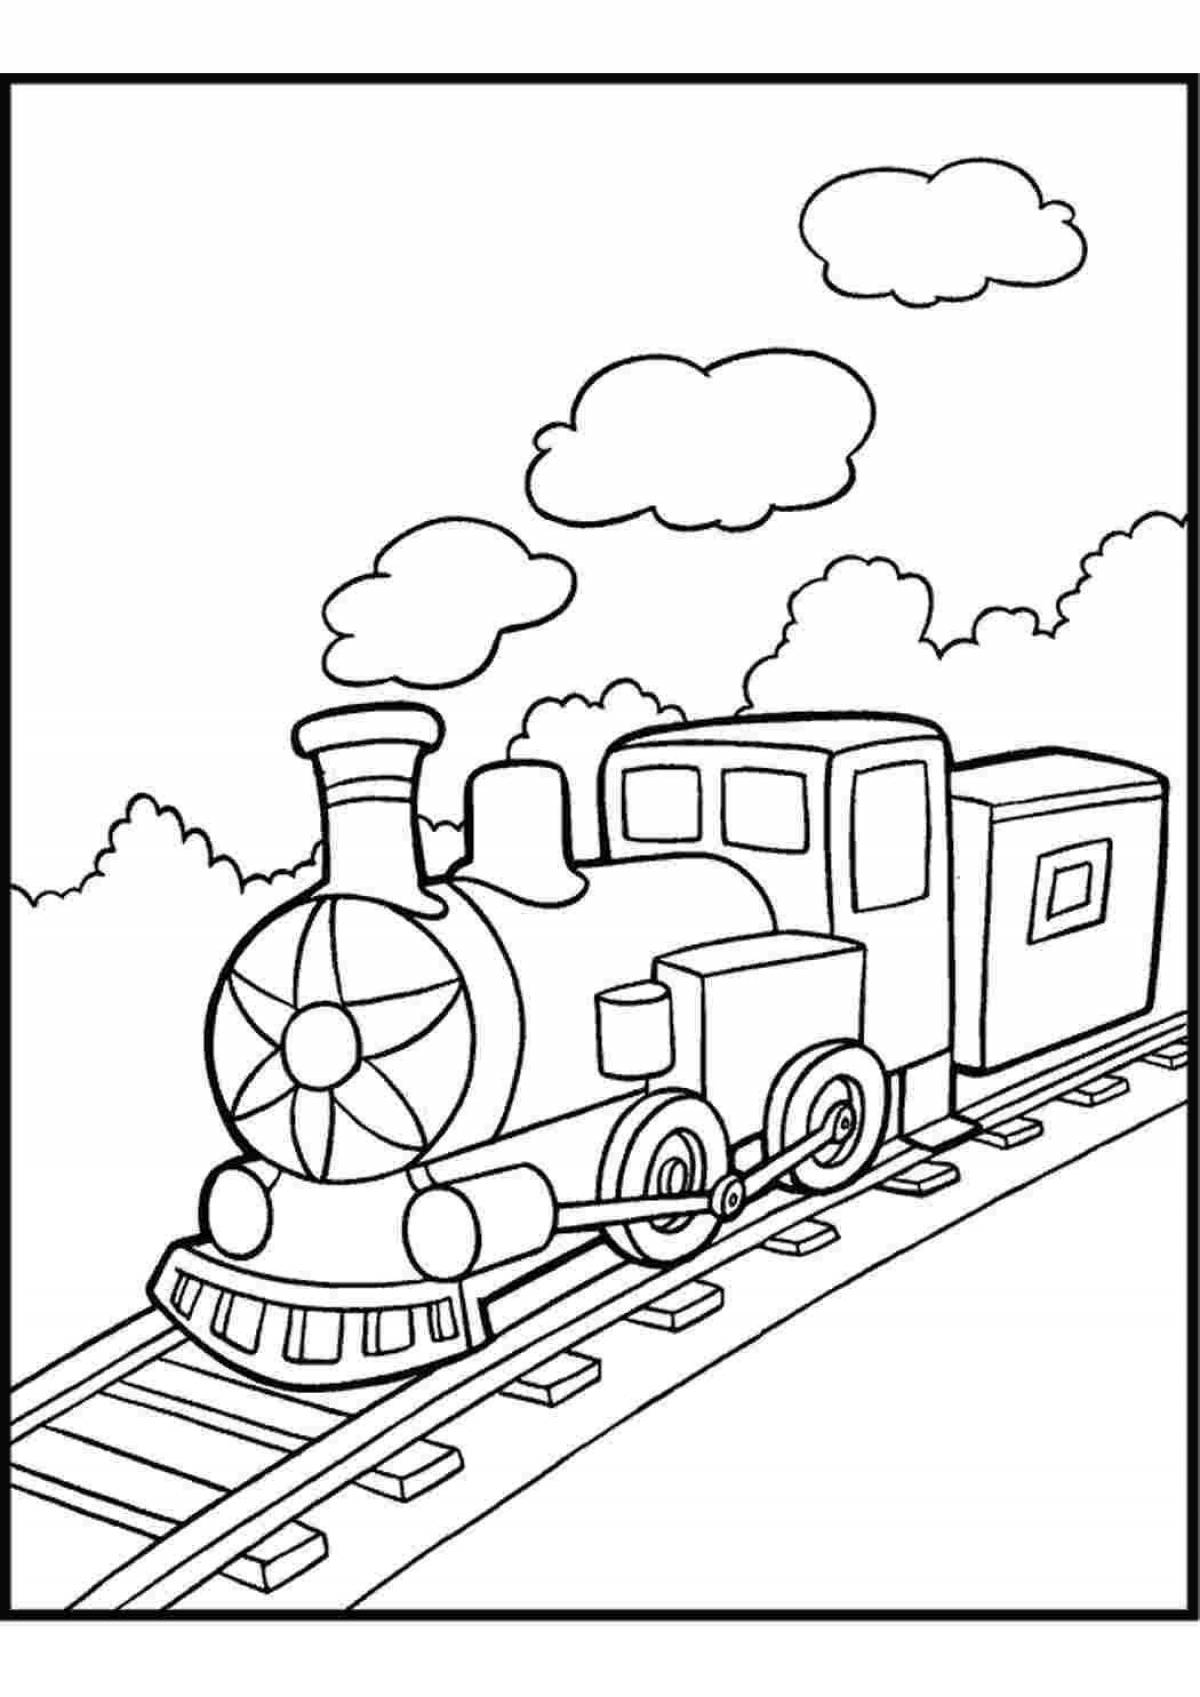 Яркая раскраска поезда для дошкольников 2-3 лет